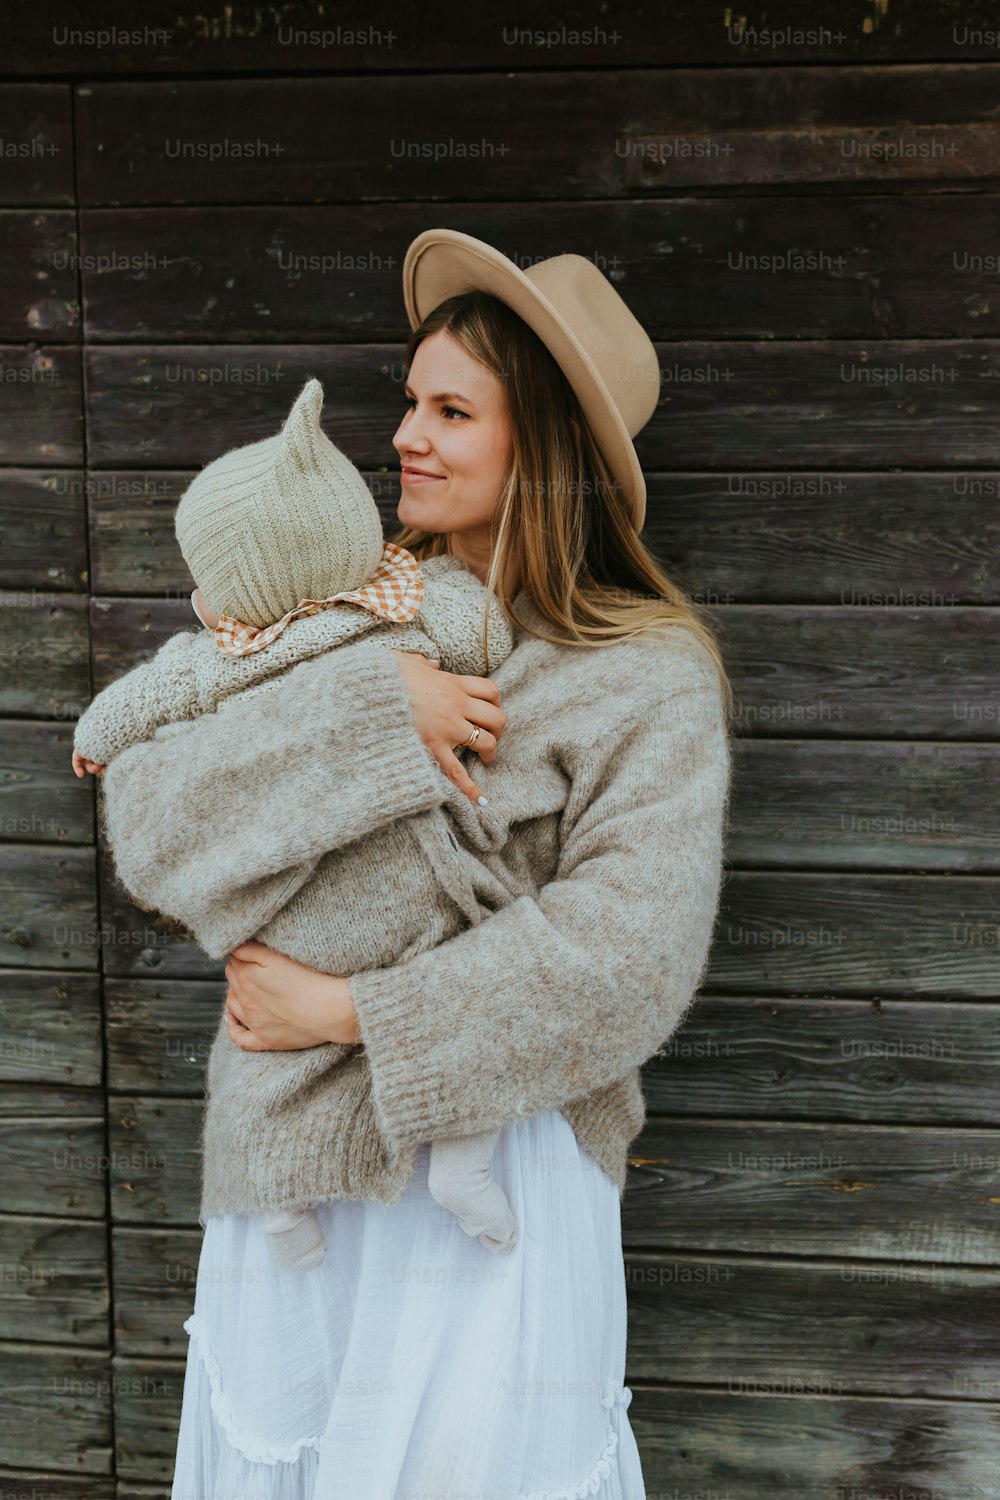 赤ん坊を腕に抱く帽子をかぶった女性